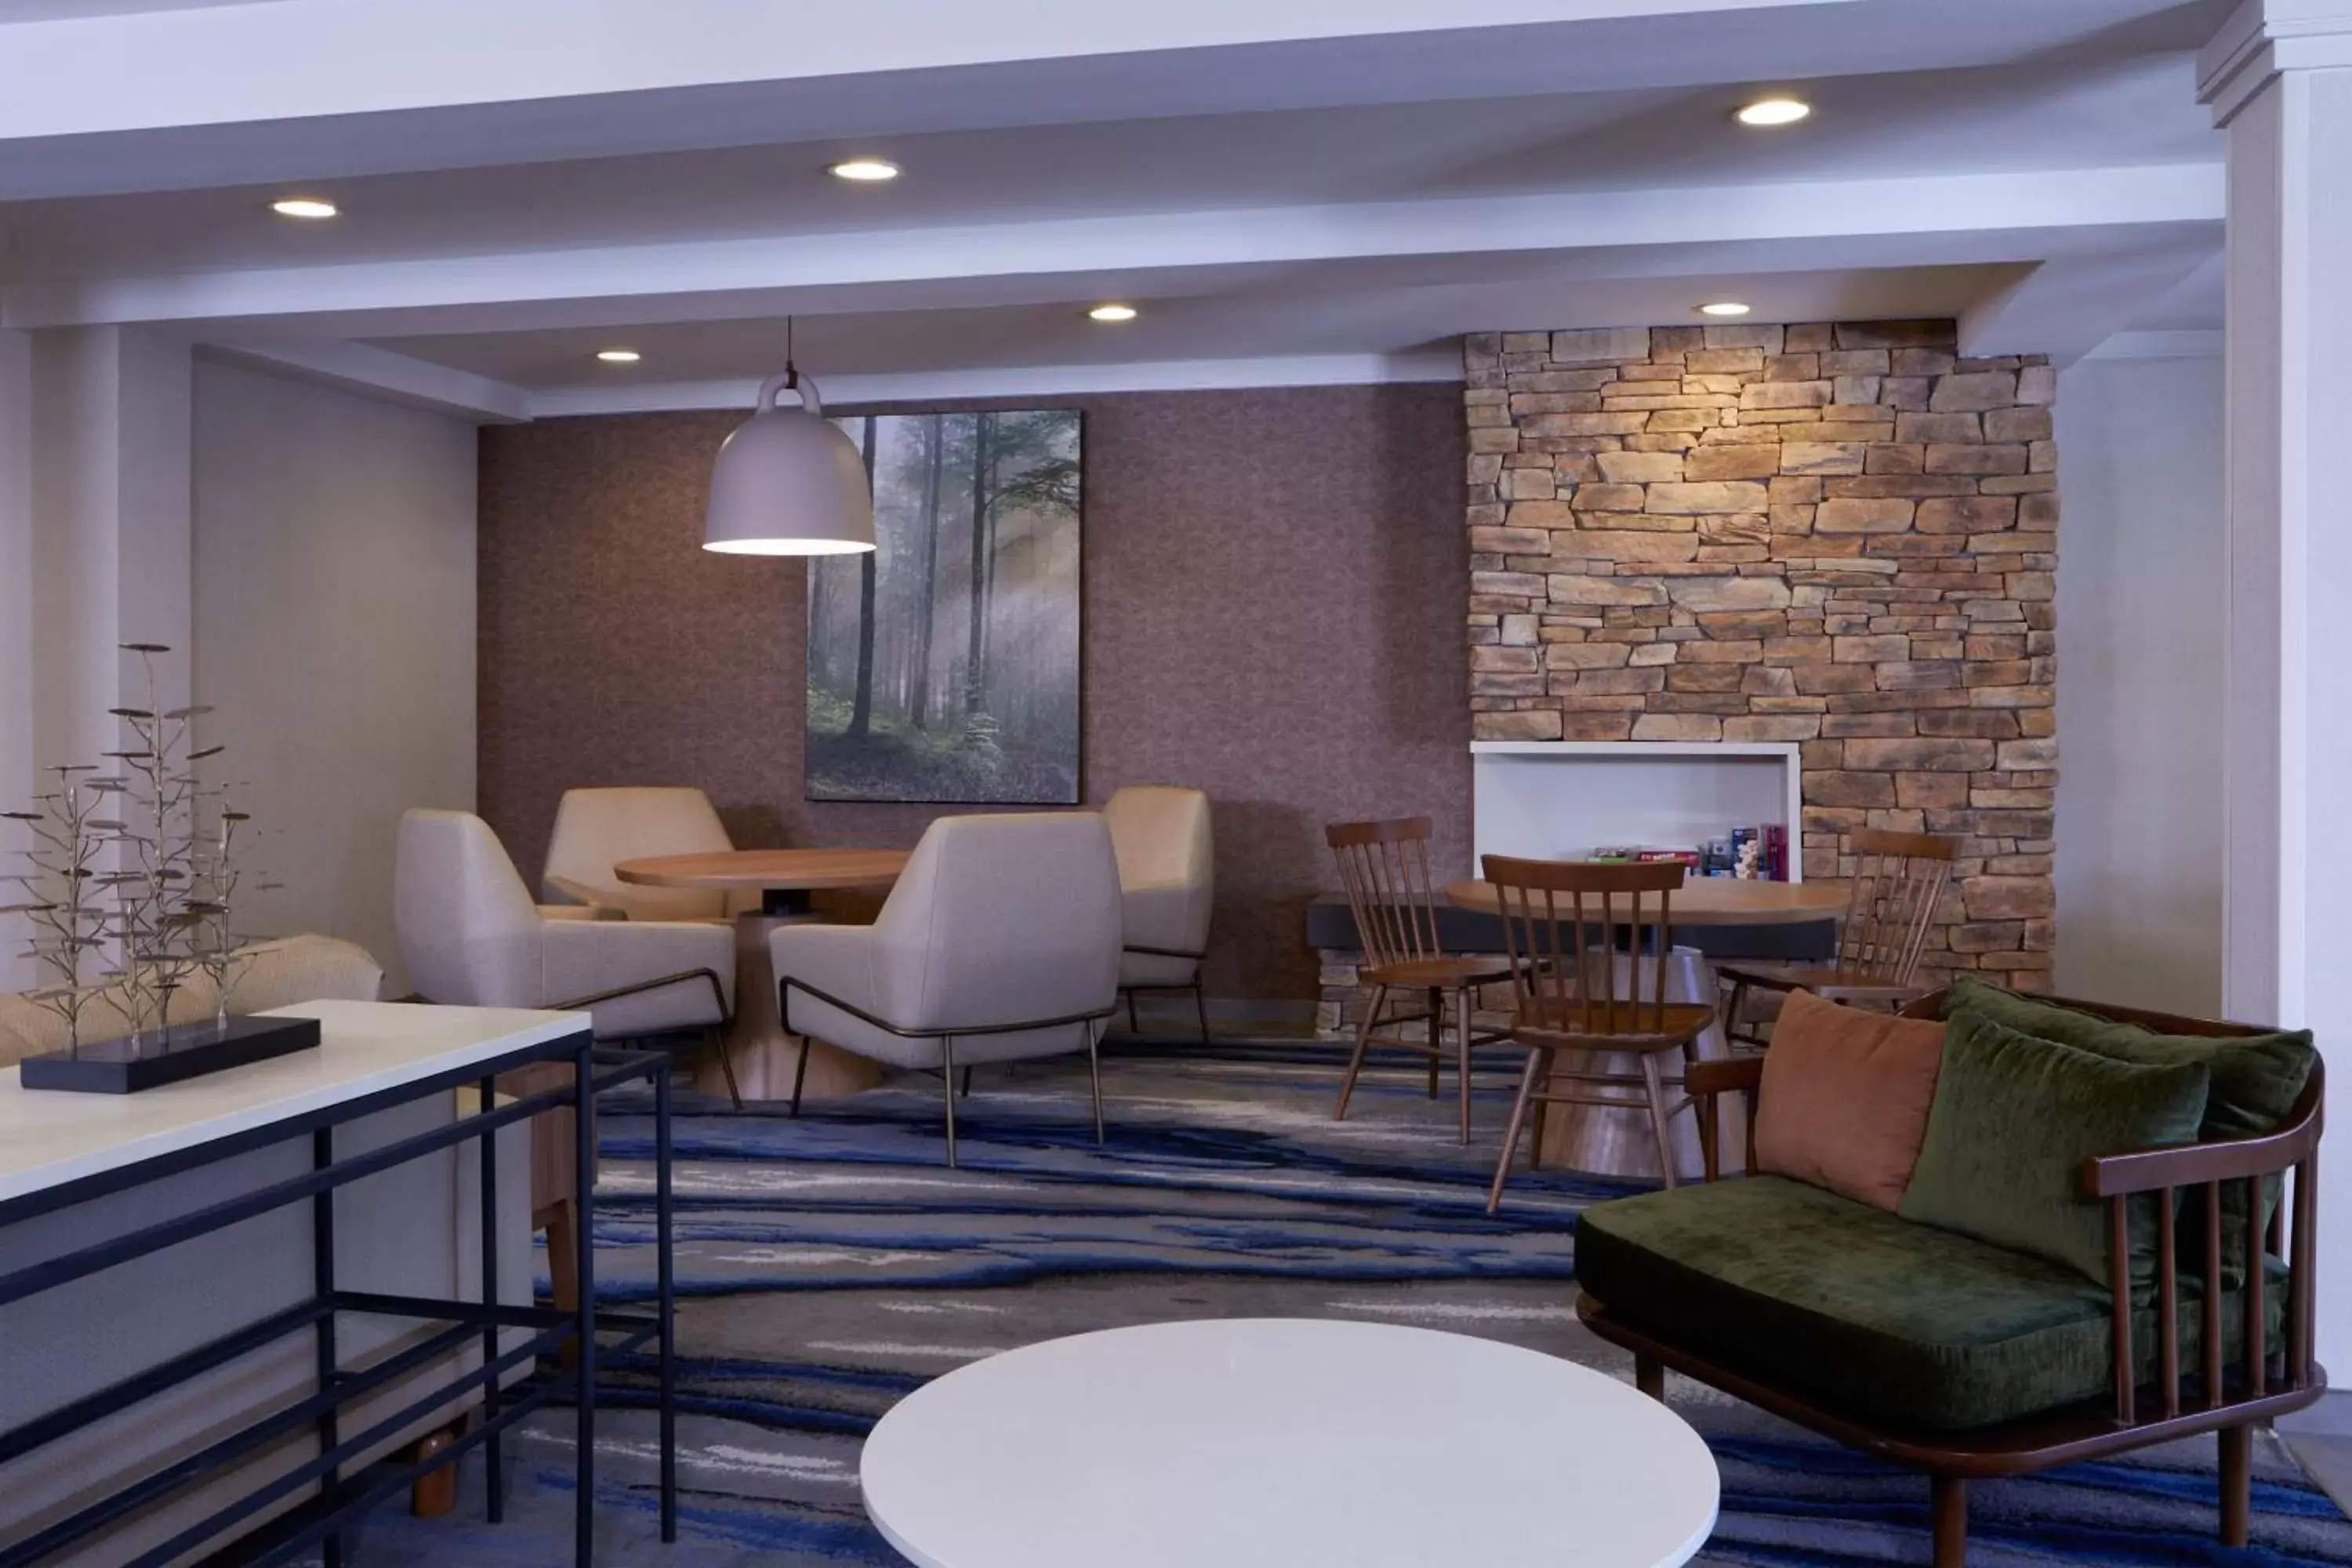 Lobby or reception in Fairfield Inn and Suites San Bernardino